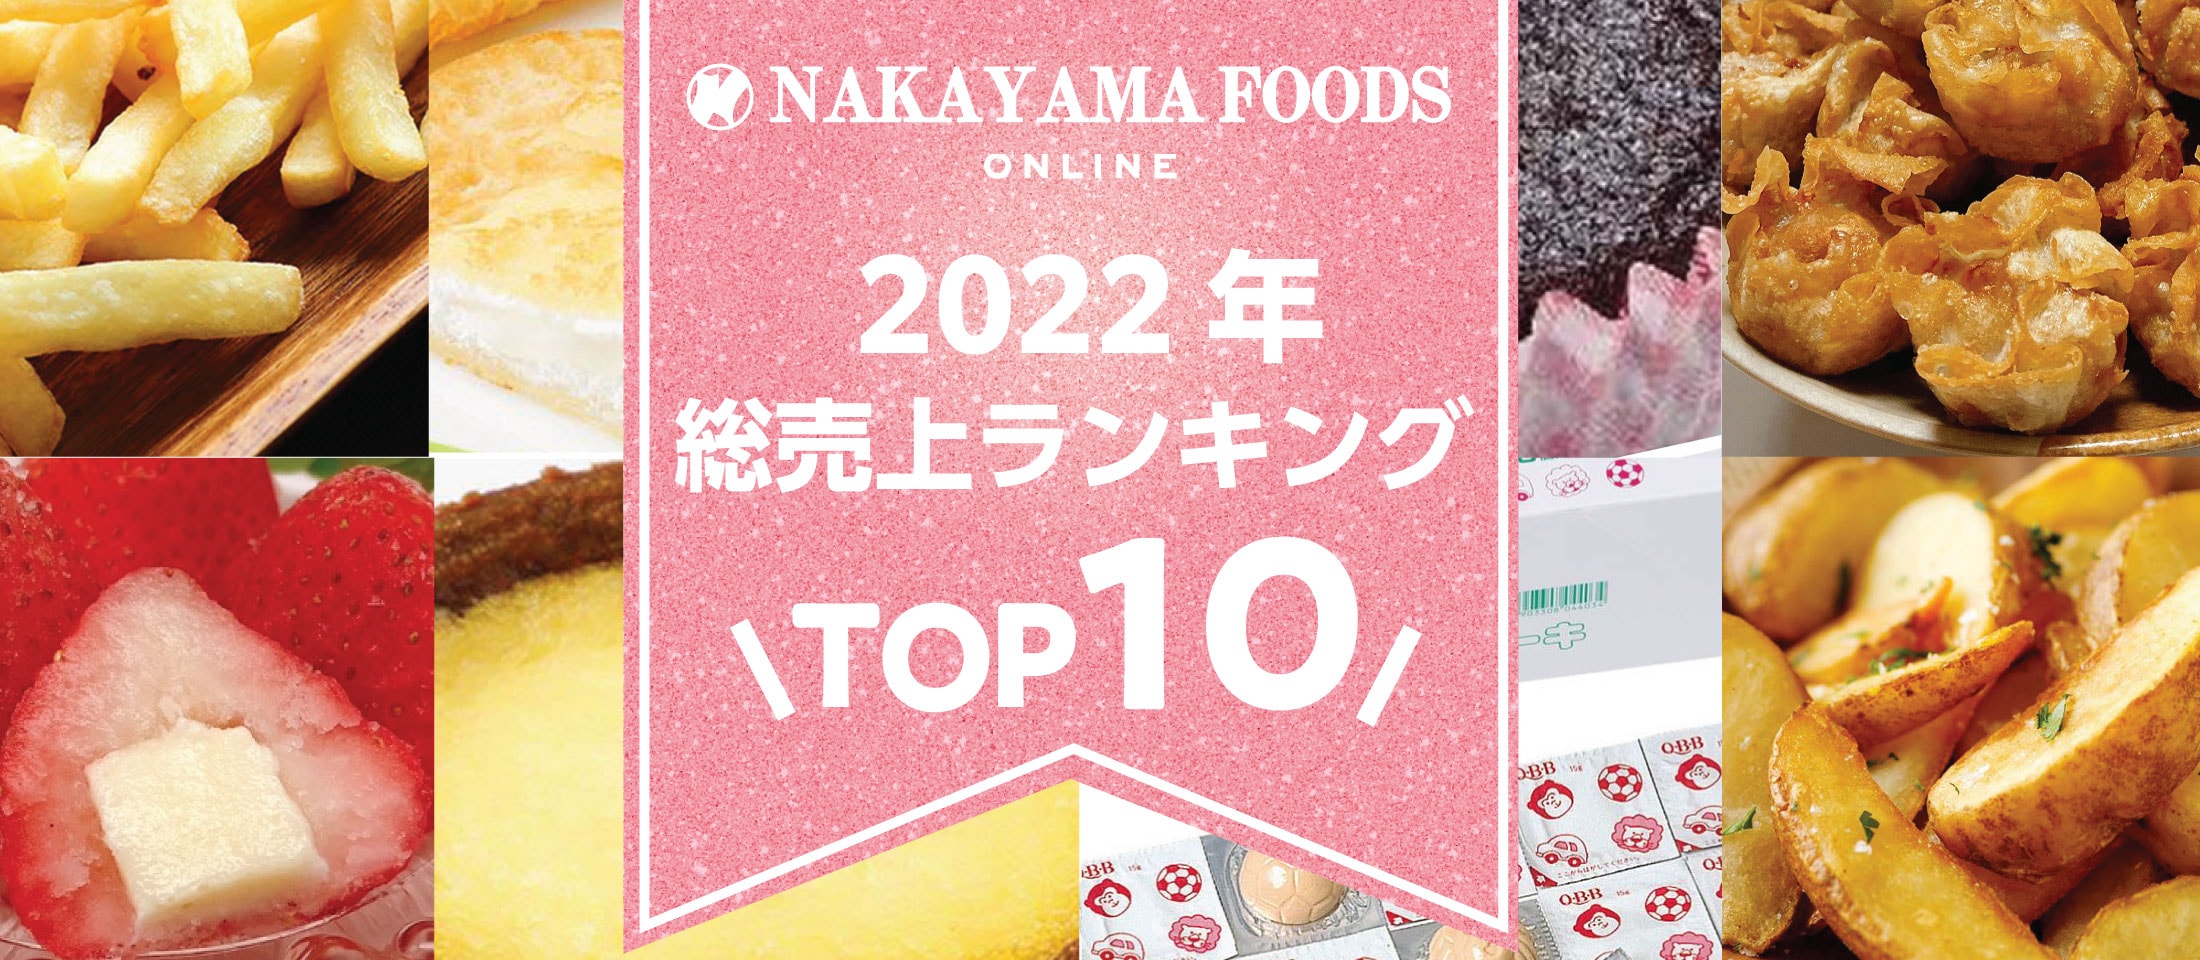 ナカヤマフーズ2022年総売上ランキング特集  業務用食品・冷凍食品おすすめ 業務用食品・冷凍食品の通販 |ナカヤマフーズ